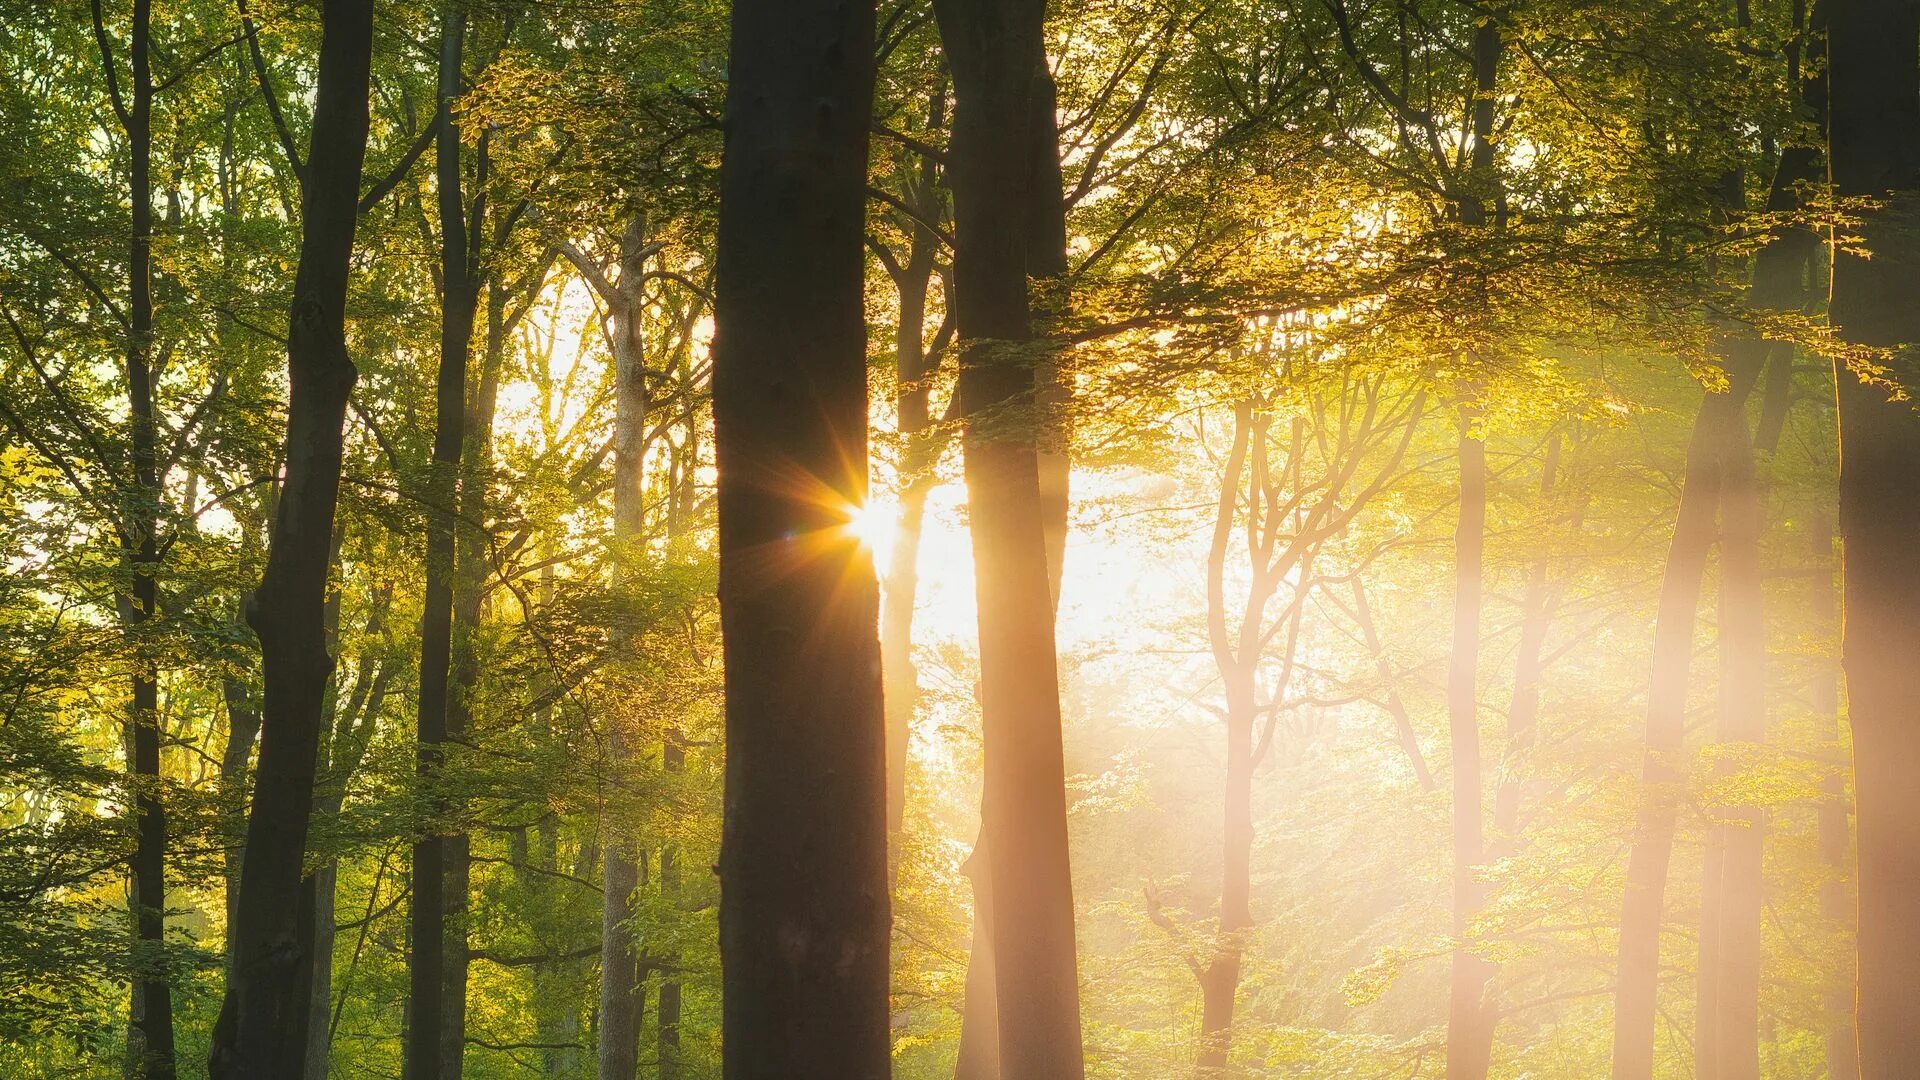 Лес солнце и звезды. Дерево в лучах солнца. Солнечный лес. "Солнце в лесу". Утро в лесу.